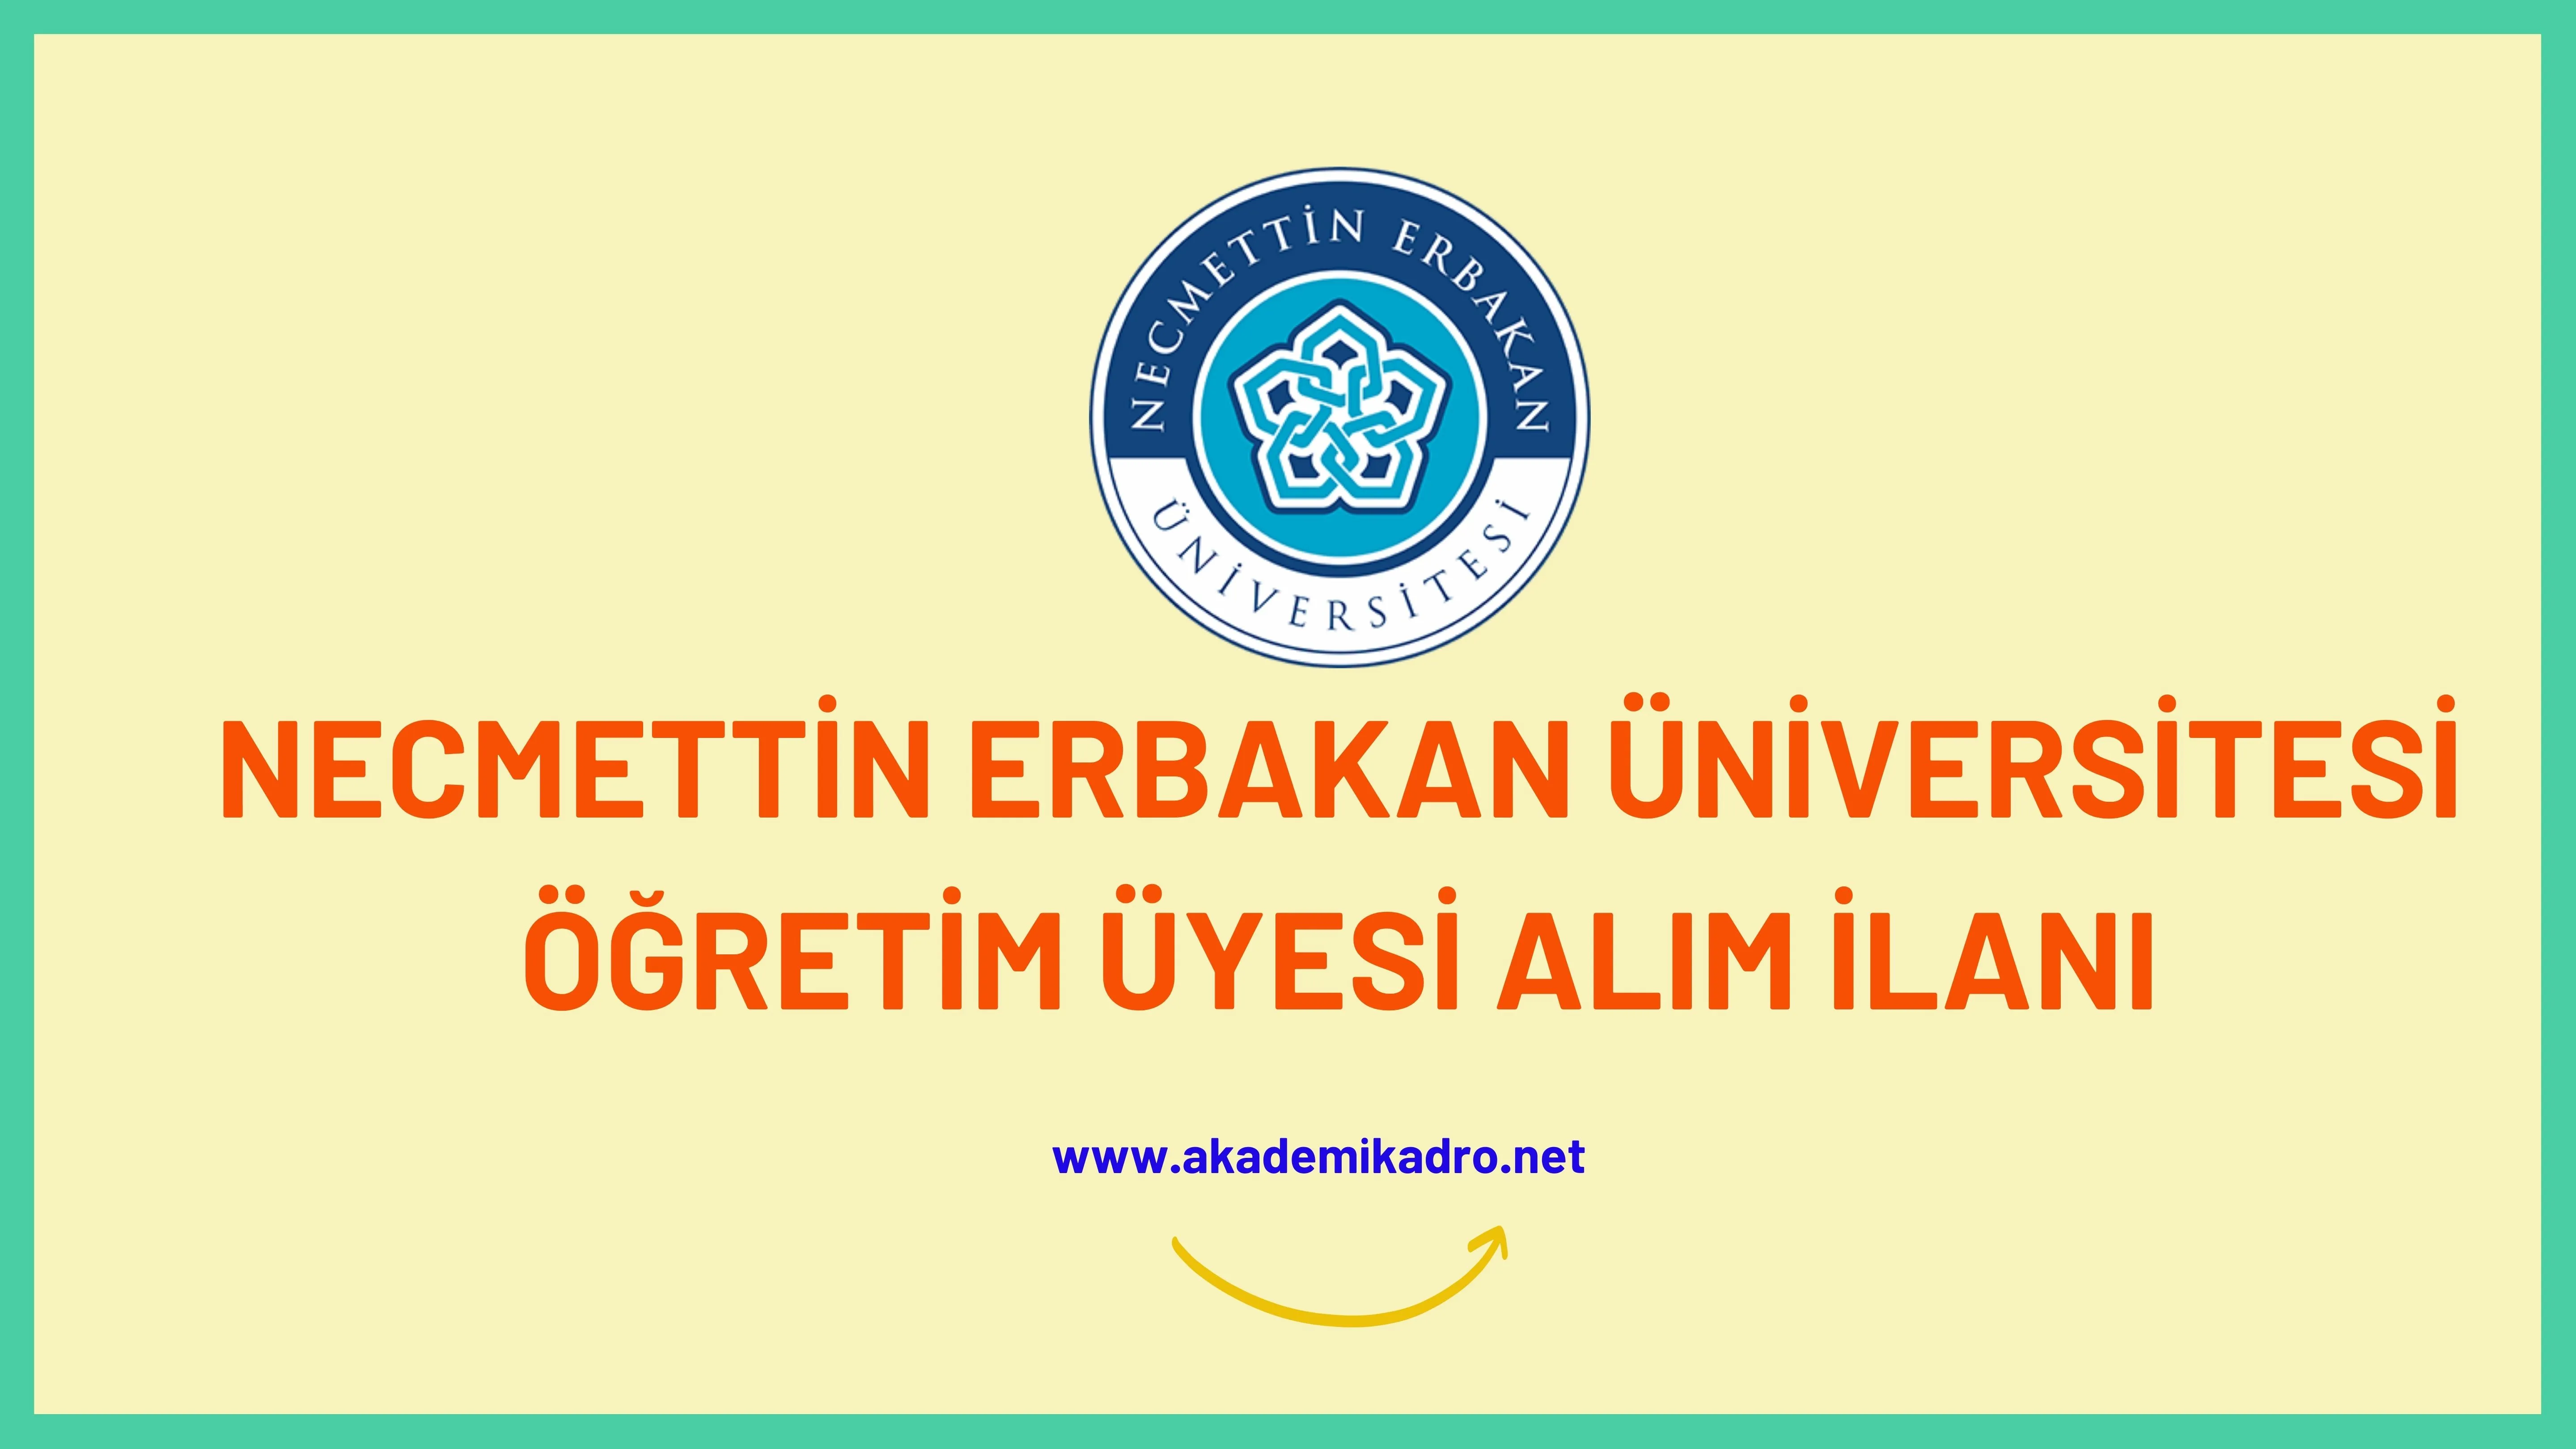 Necmettin Erbakan Üniversitesi birçok alandan 12 öğretim üyesi alacak.